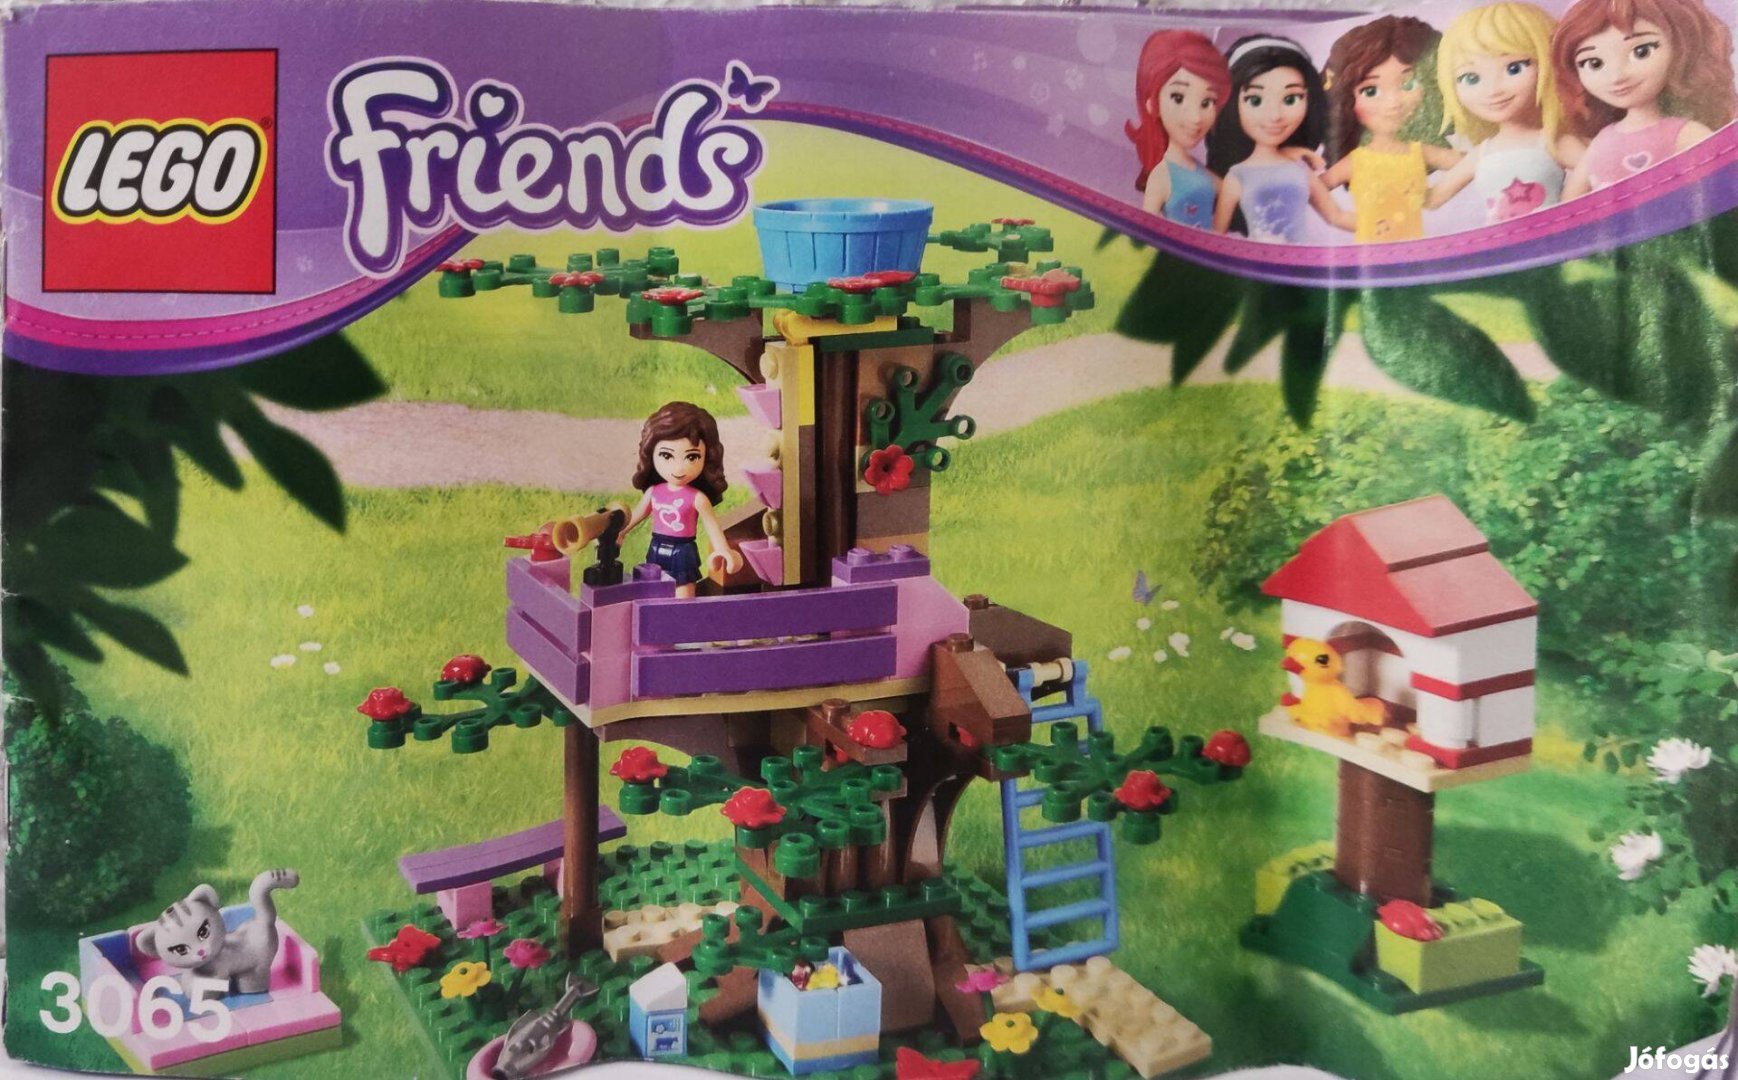 LEGO Friends - Olivia lombháza 3065